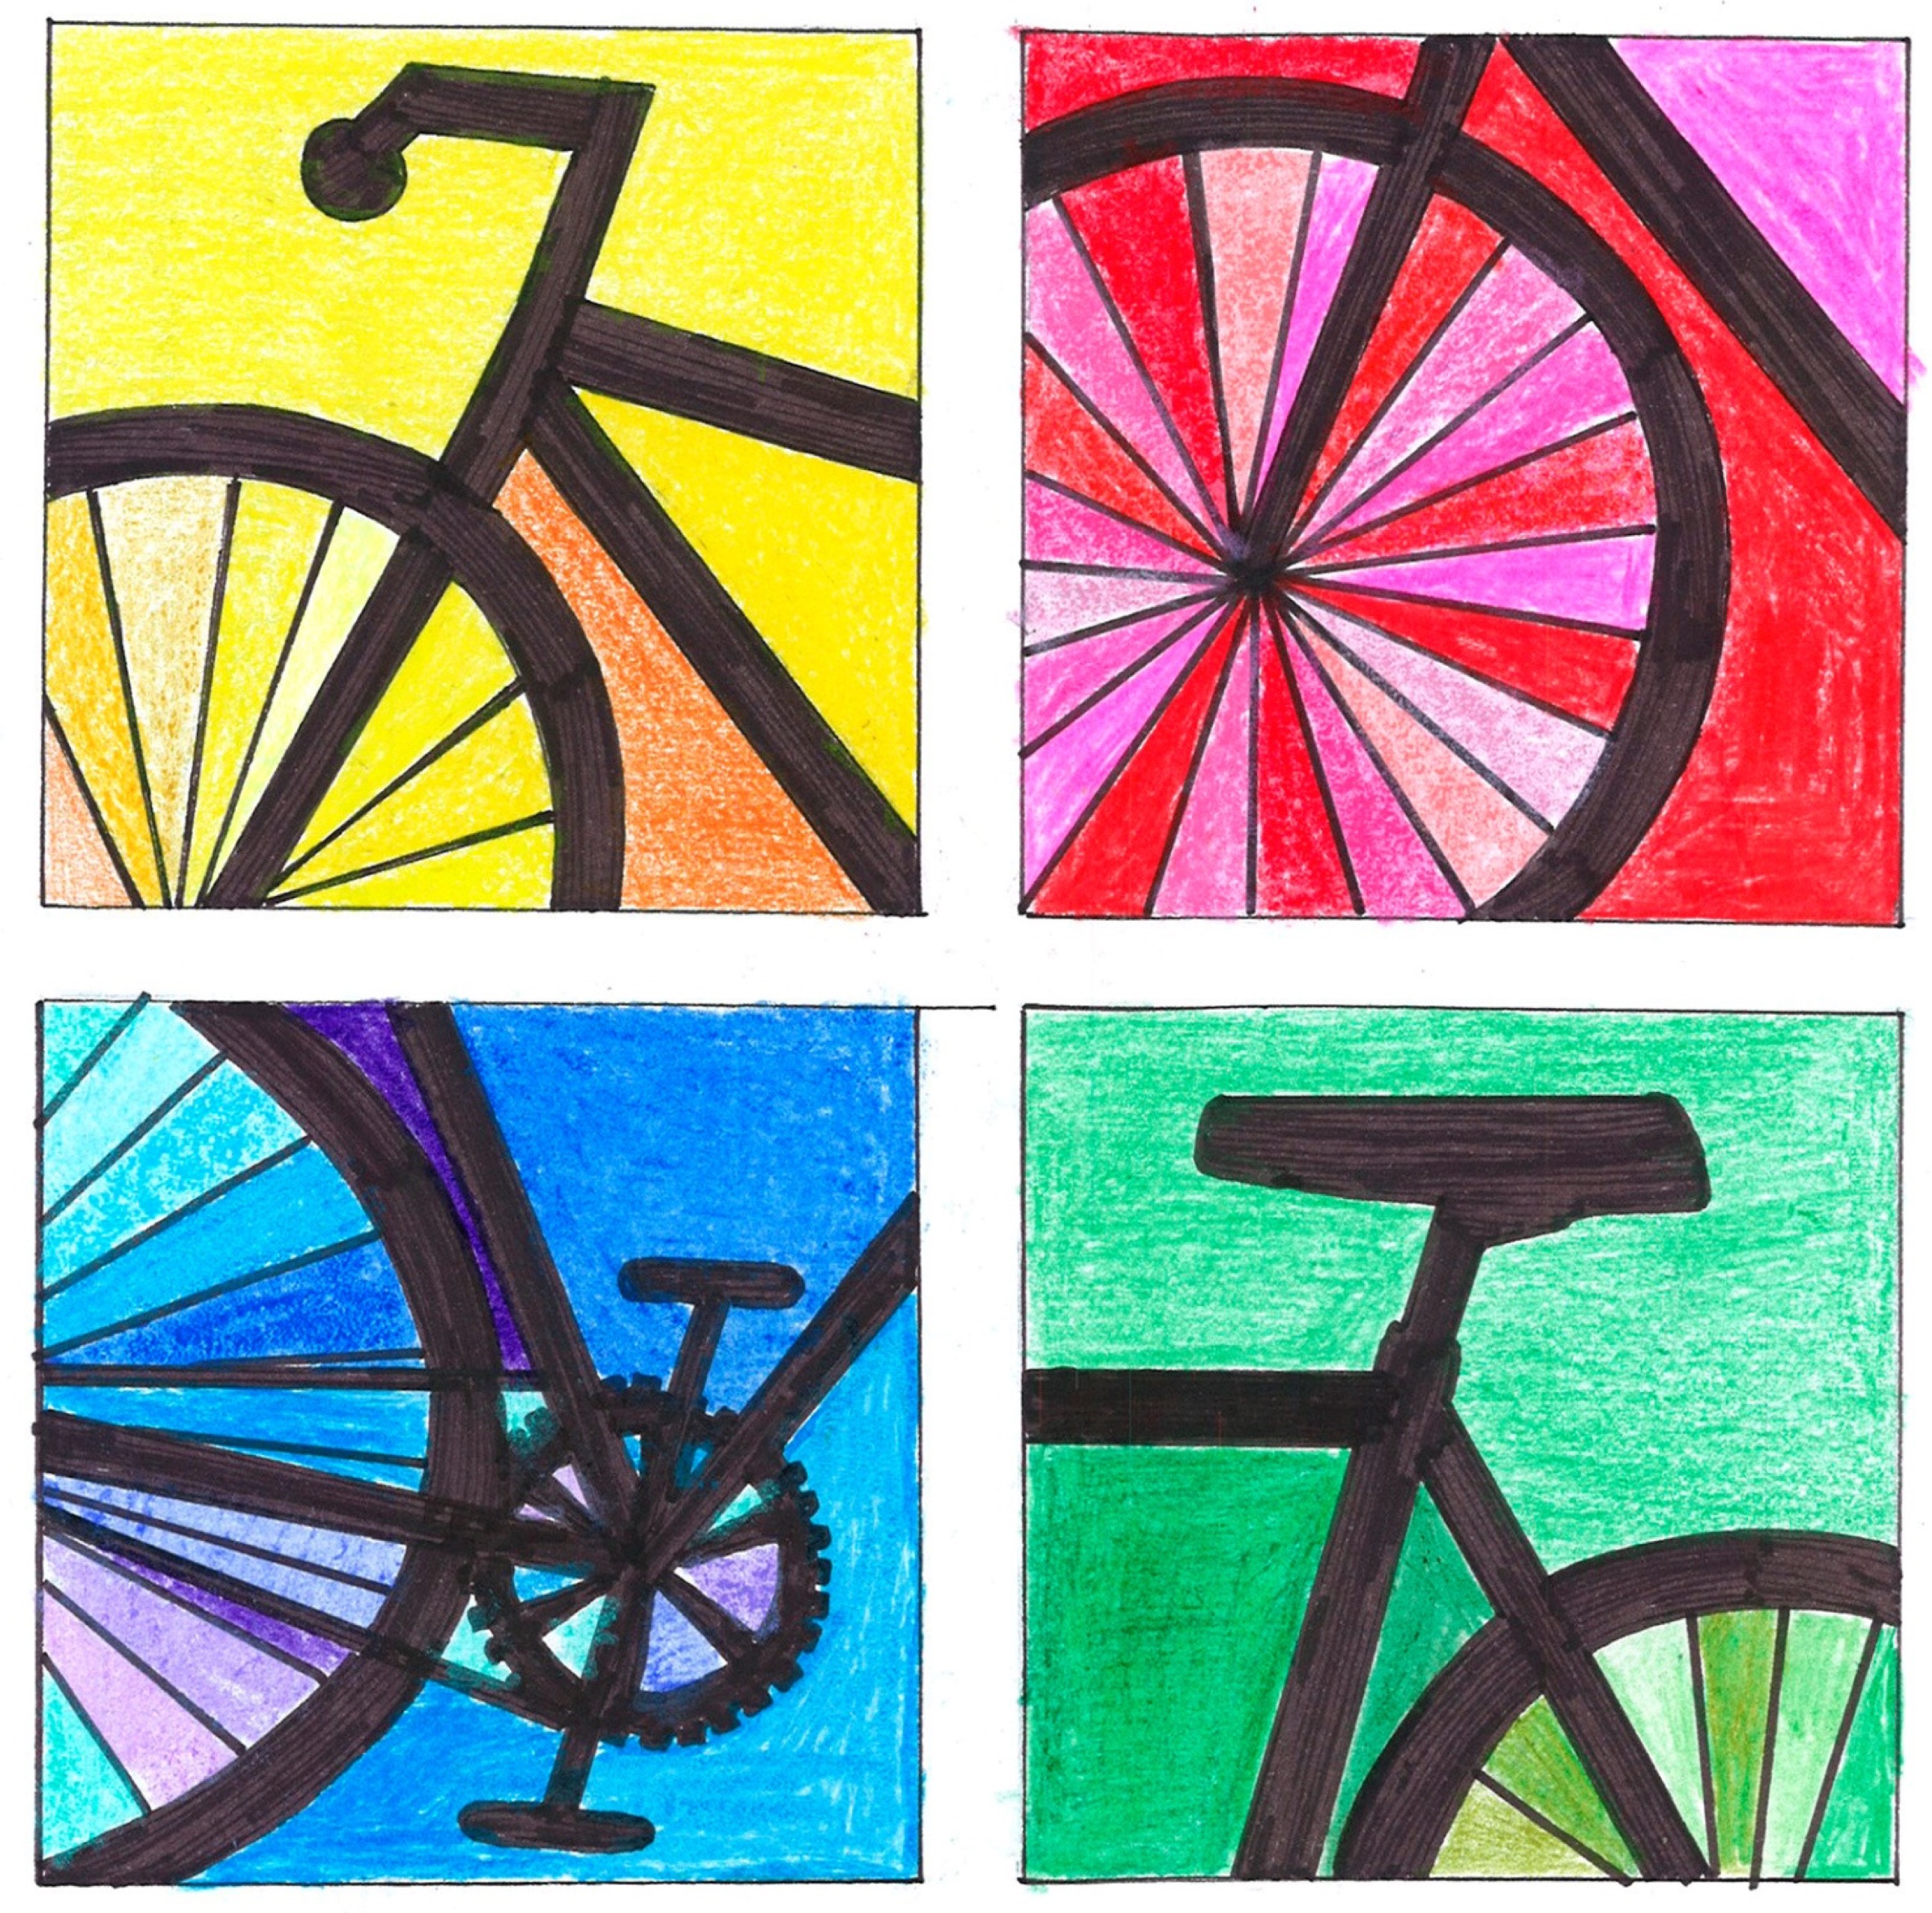 mosaico de cuatro imágenes con distintas partes de la bici desordenadas